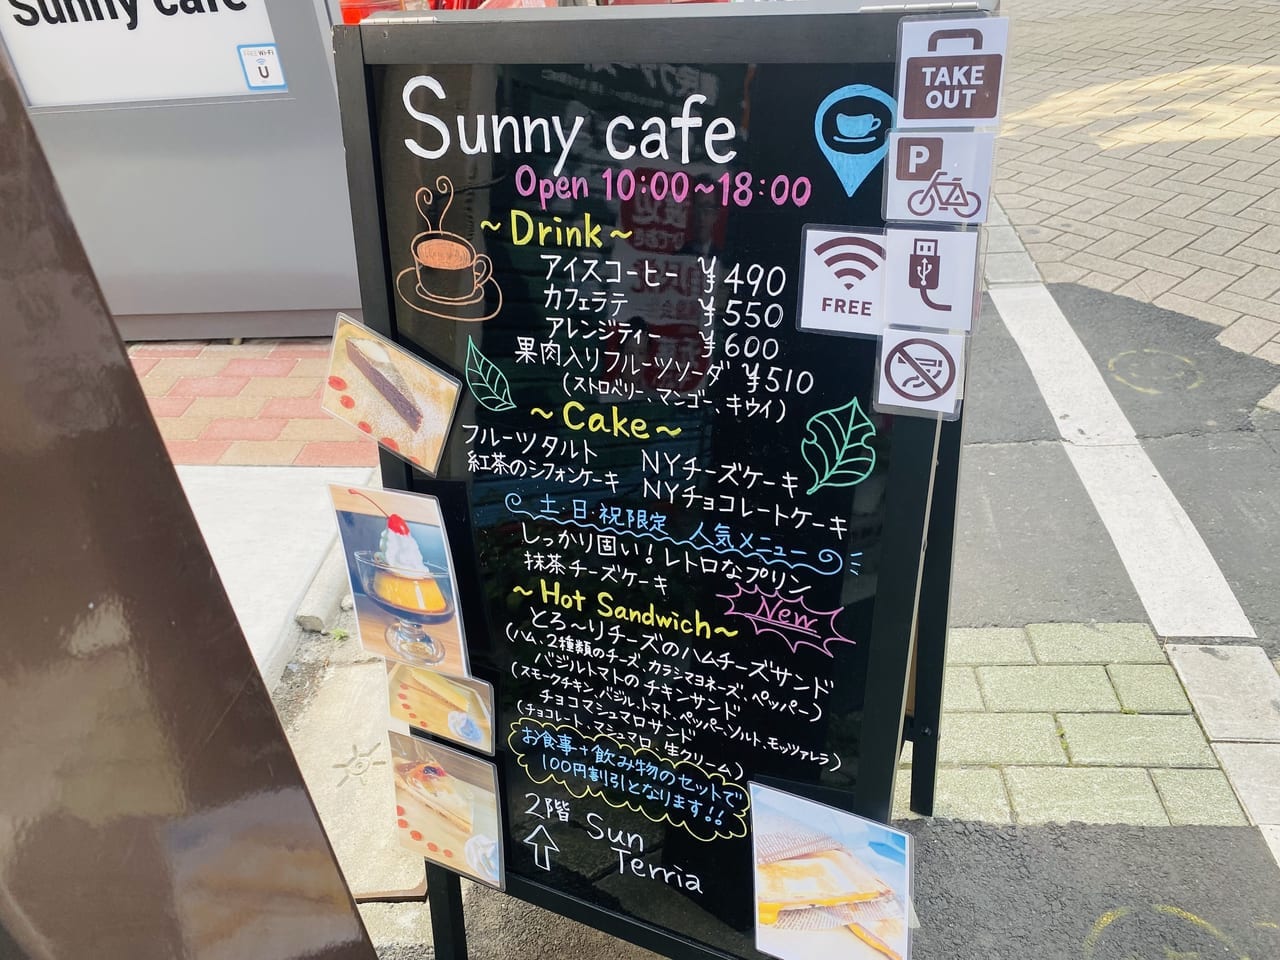 Sunny cafe